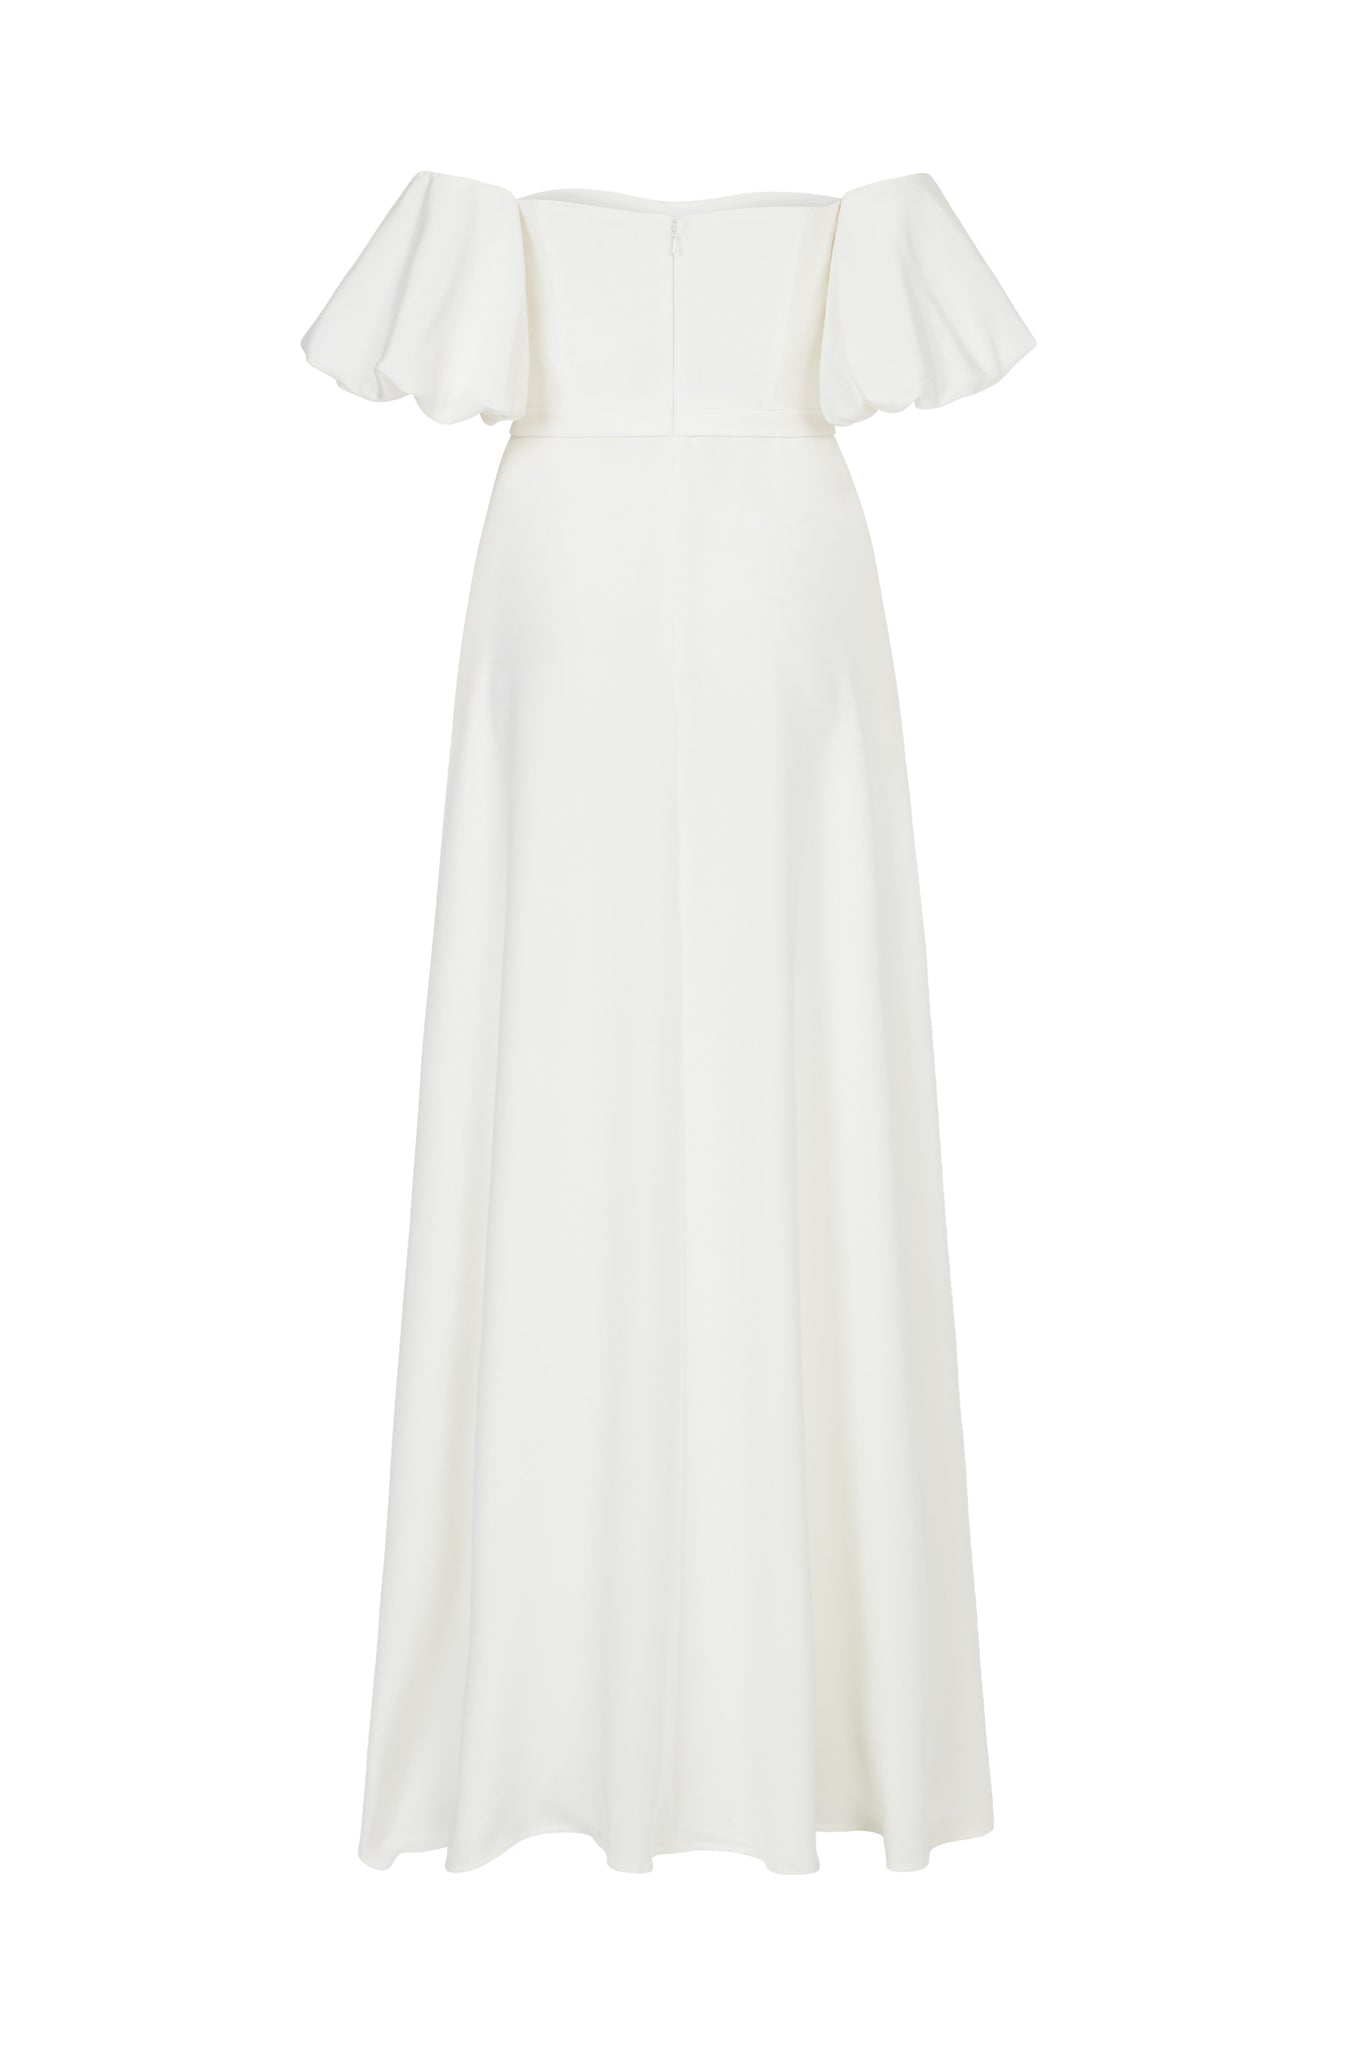 moss | 100% silk made to order wedding dress – Clover London